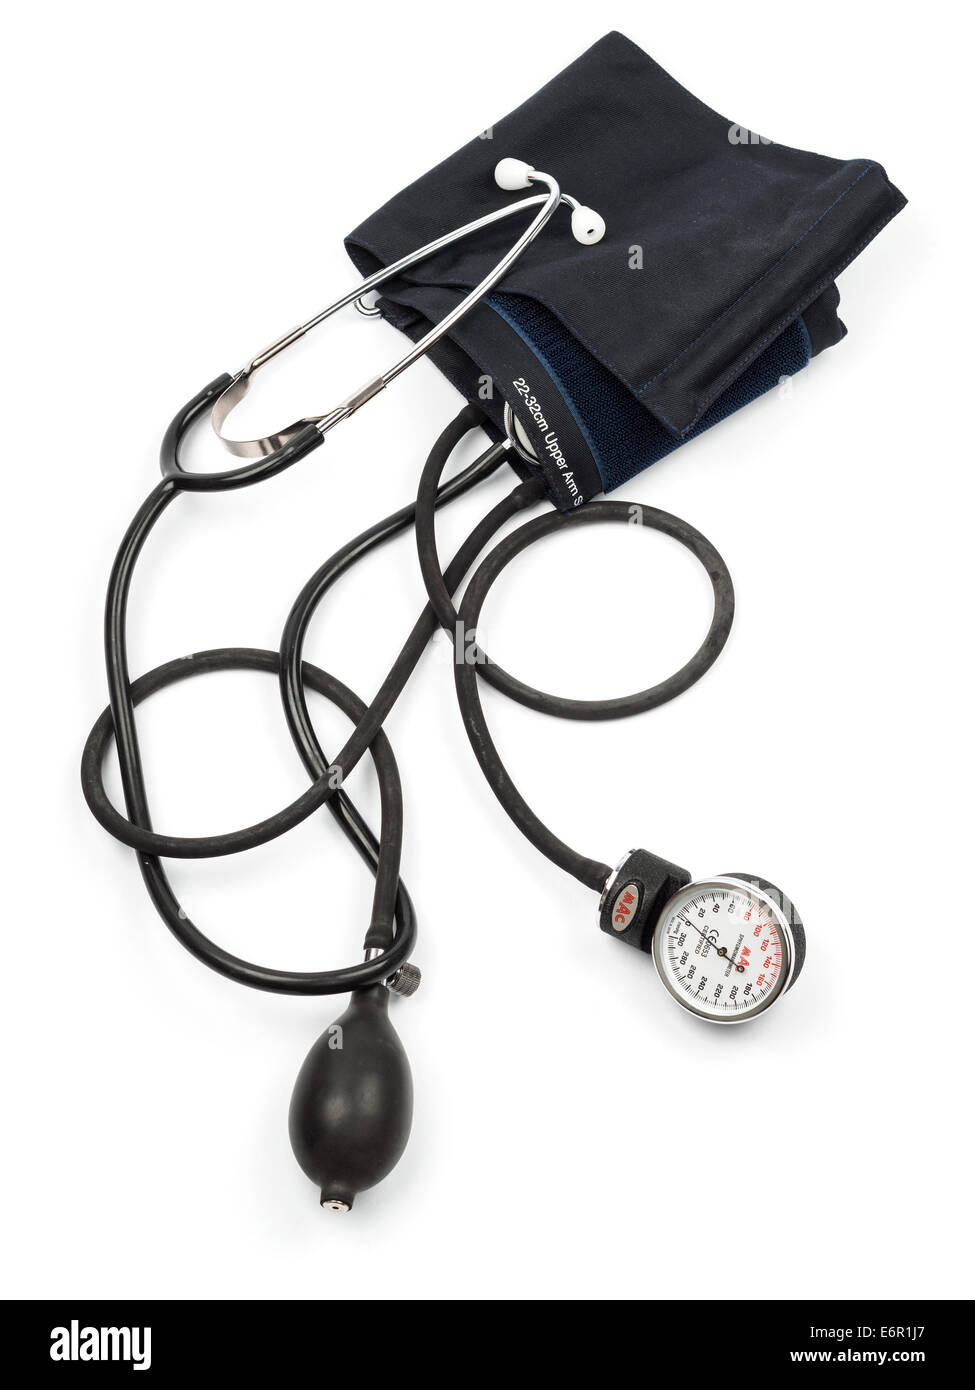 Aparato de presión arterial fotografías e imágenes de alta